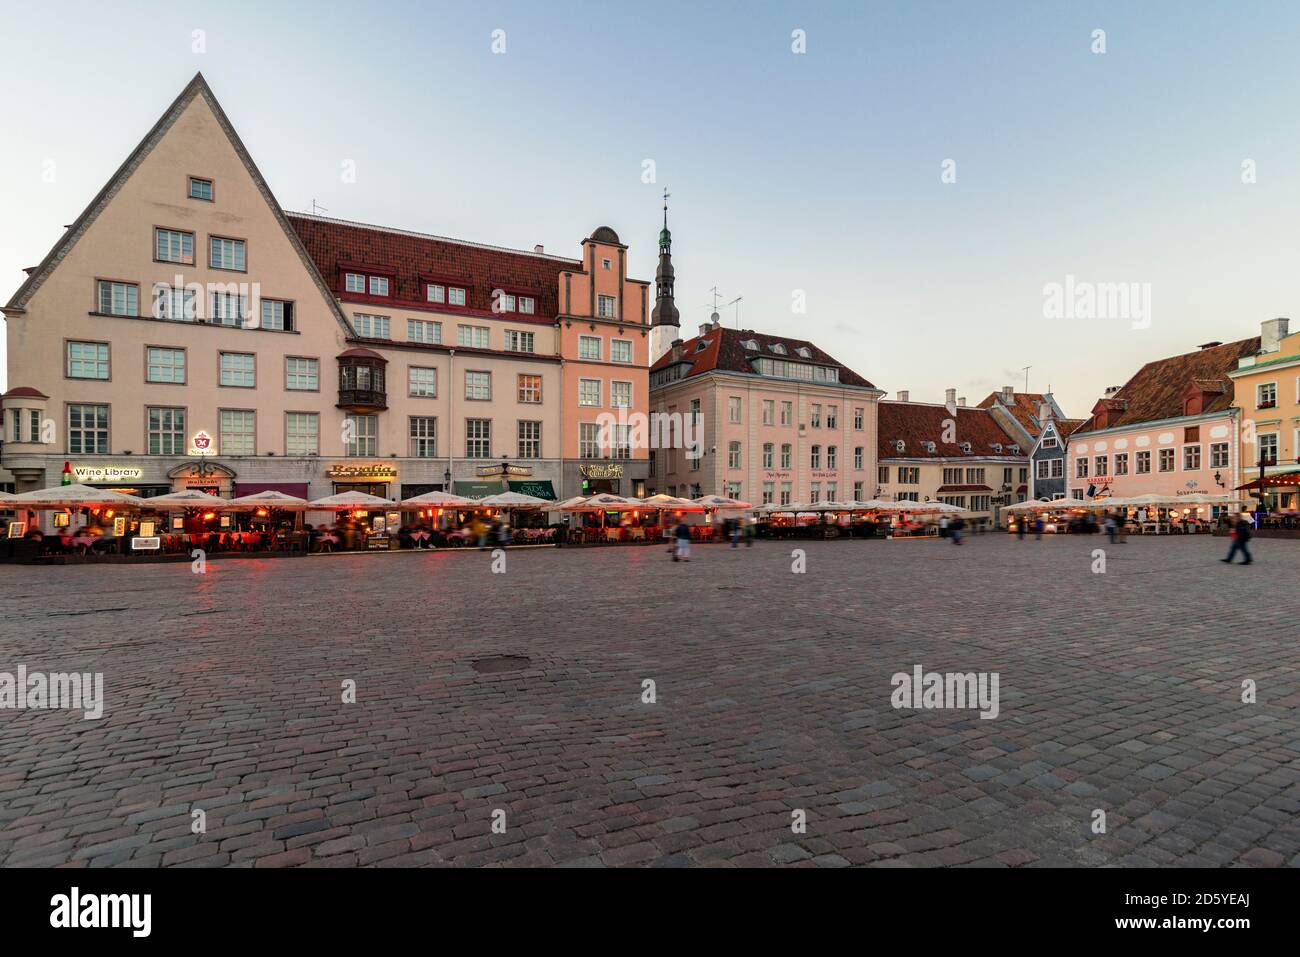 Estonia, Tallinn, market place in the evening Stock Photo